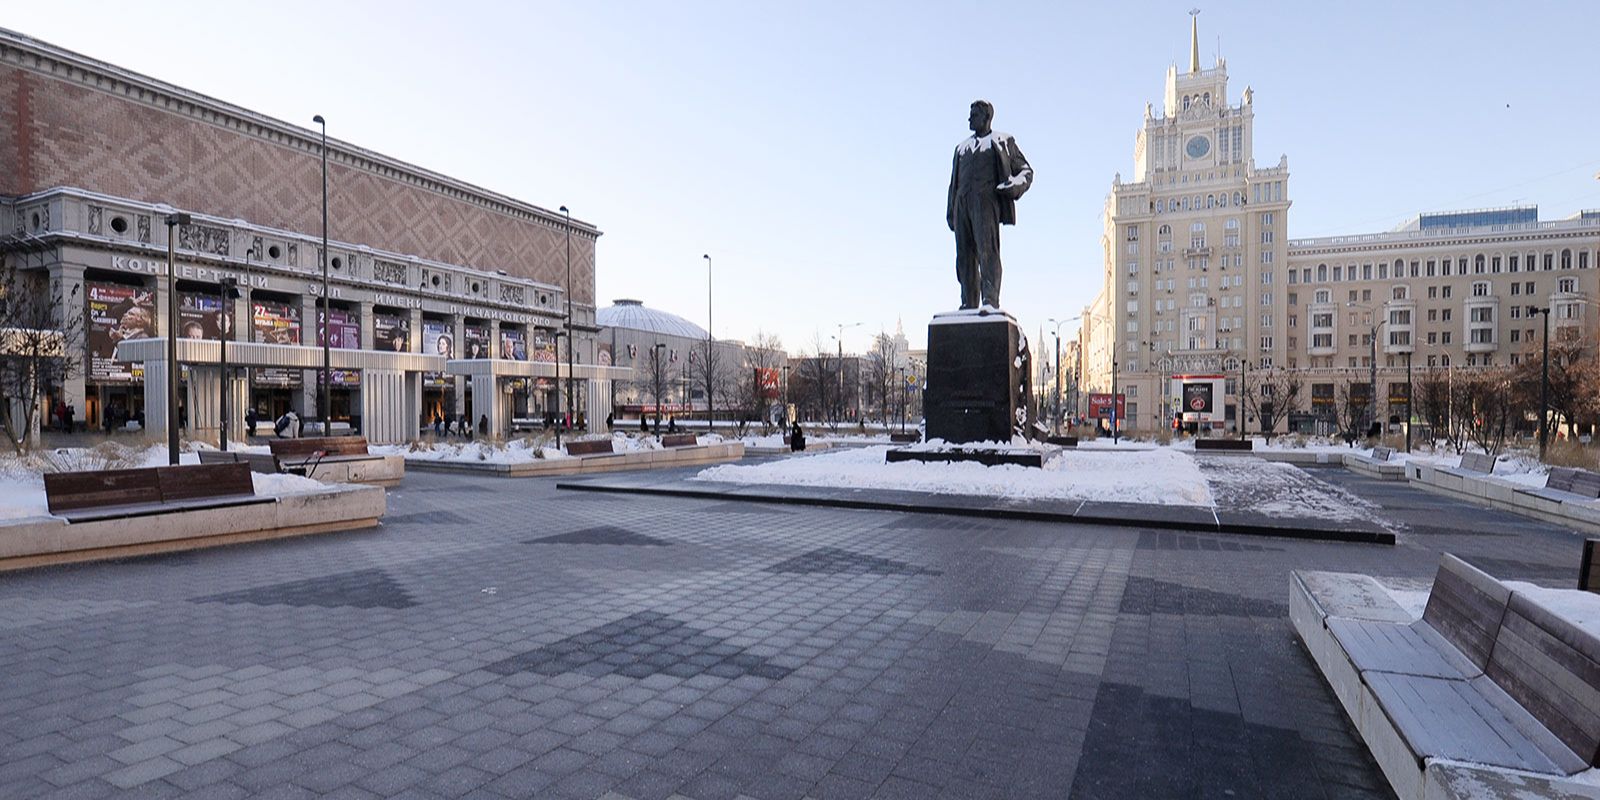 Отреставрируют памятники Владимиру Маяковскому на Триумфальной площади,  Карлу Марксу на Театральной площади, Николаю Бауману на Елоховской площади. Фото взято с сайта мэра Москвы